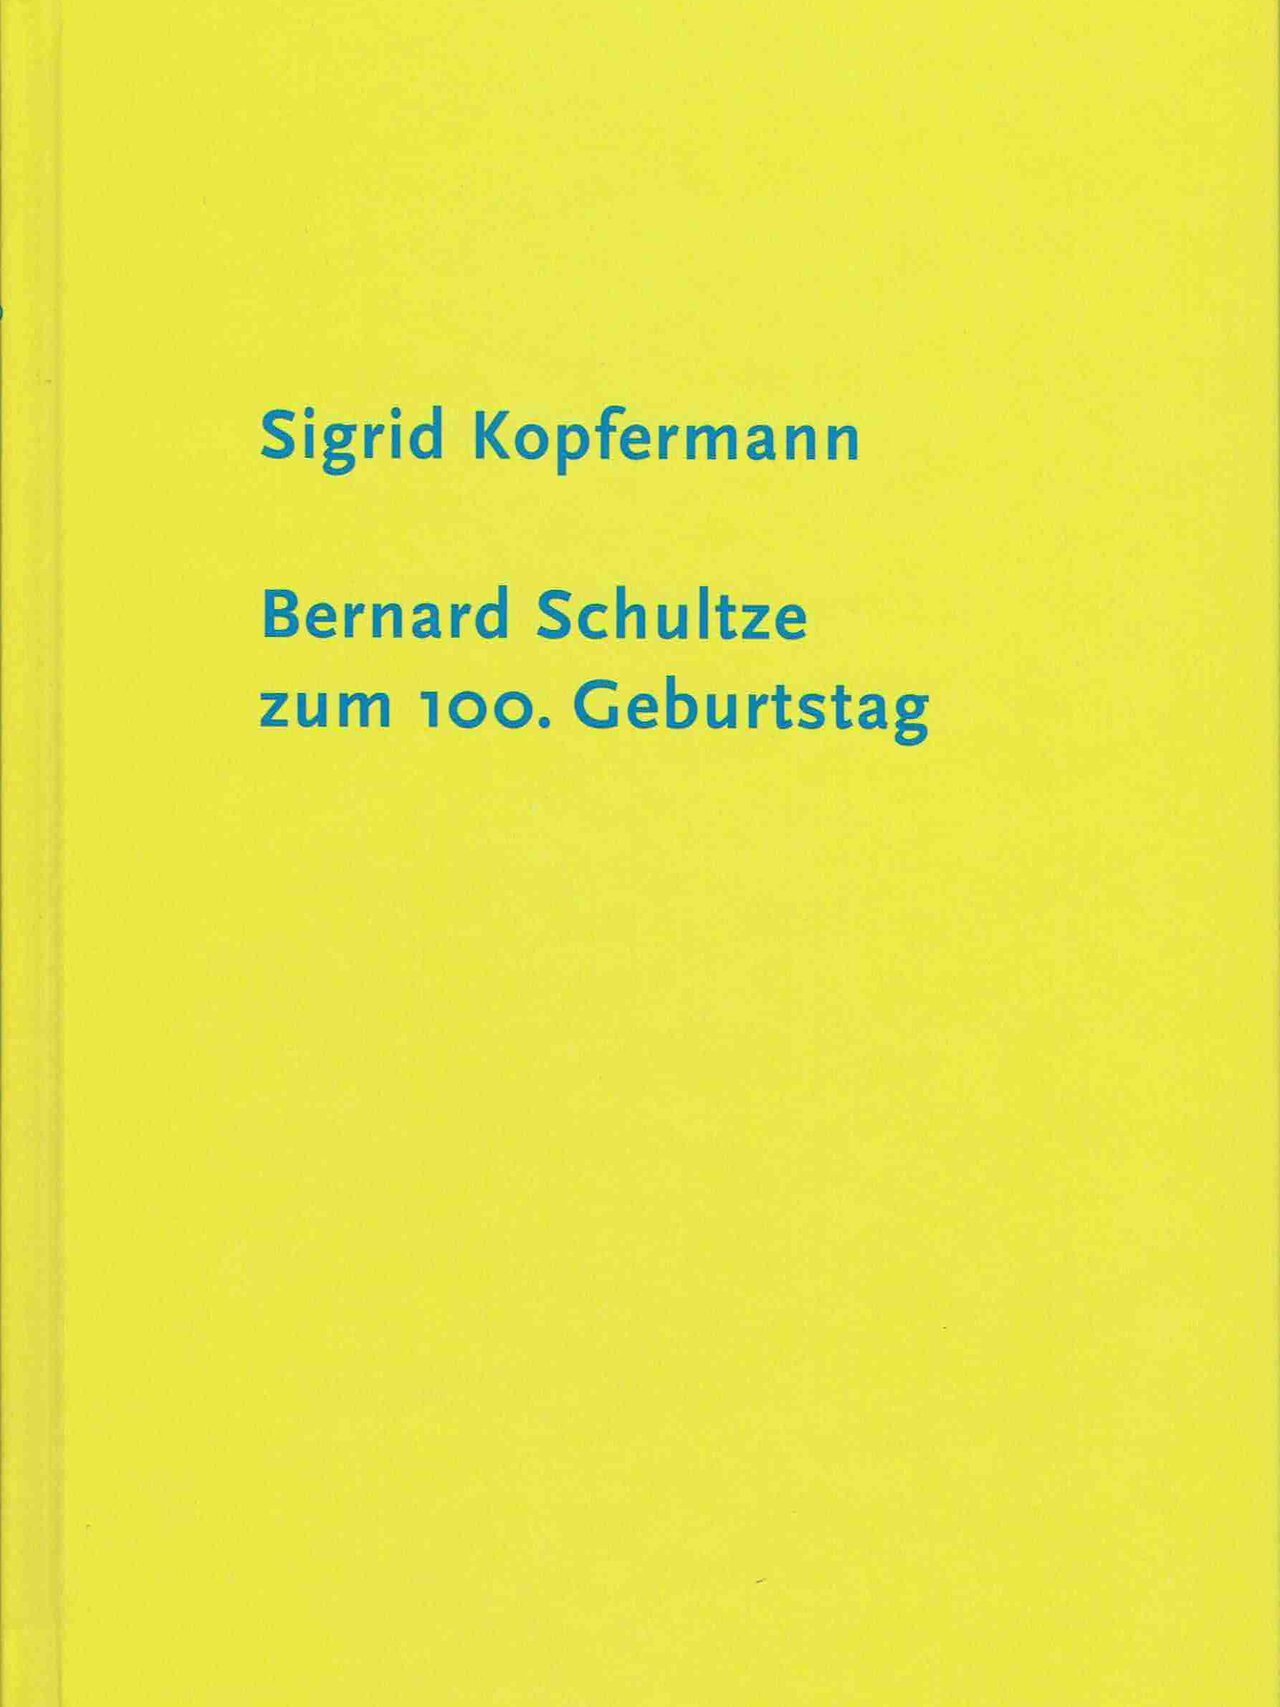 Sigrid Kopfermann - Bernard Schultze zum 100. Geburtstag